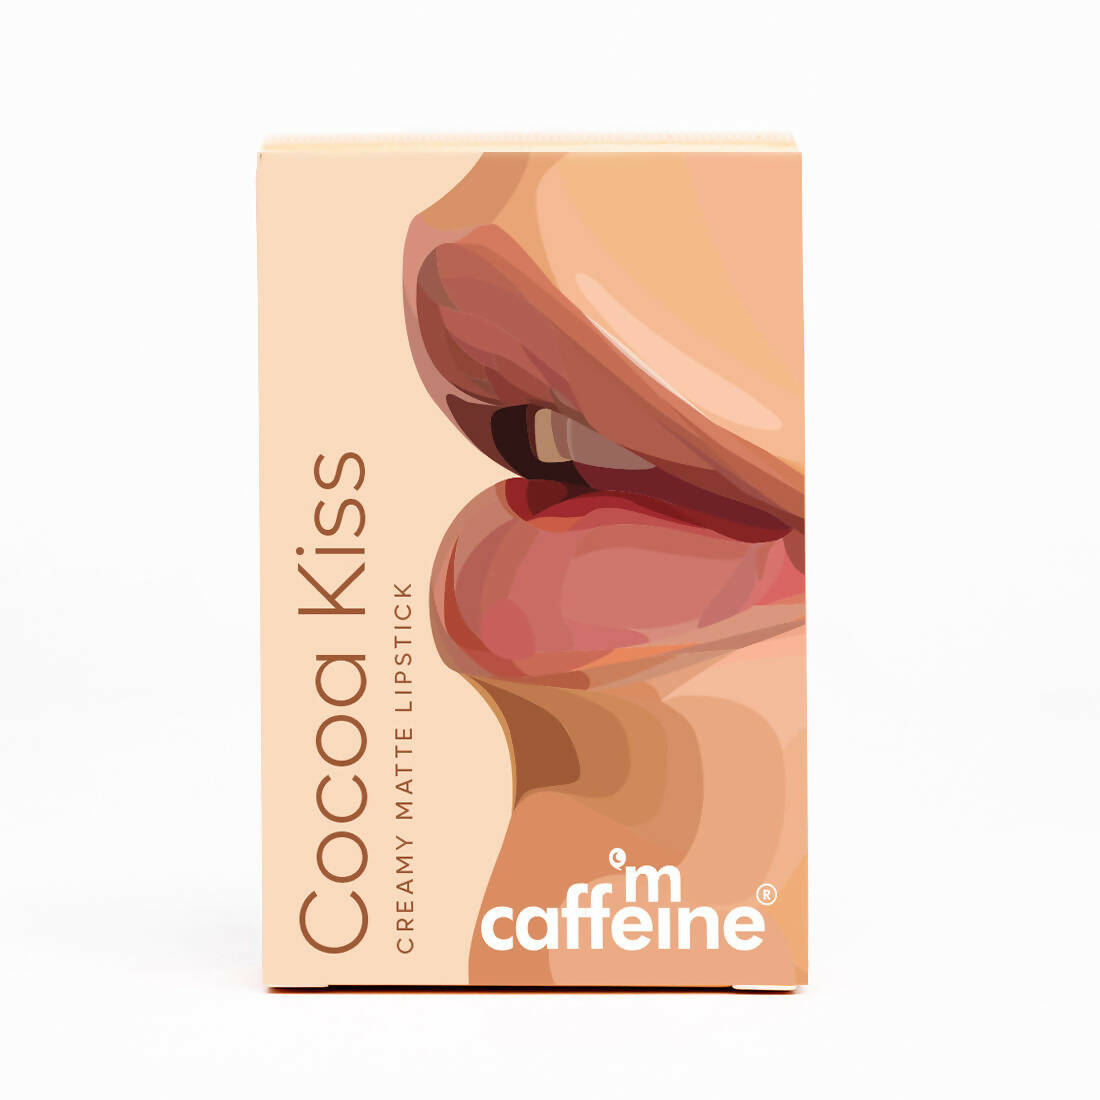 mCaffeine Cocoa Kiss Creamy Matte Lipstick - Rose Martini - Distacart